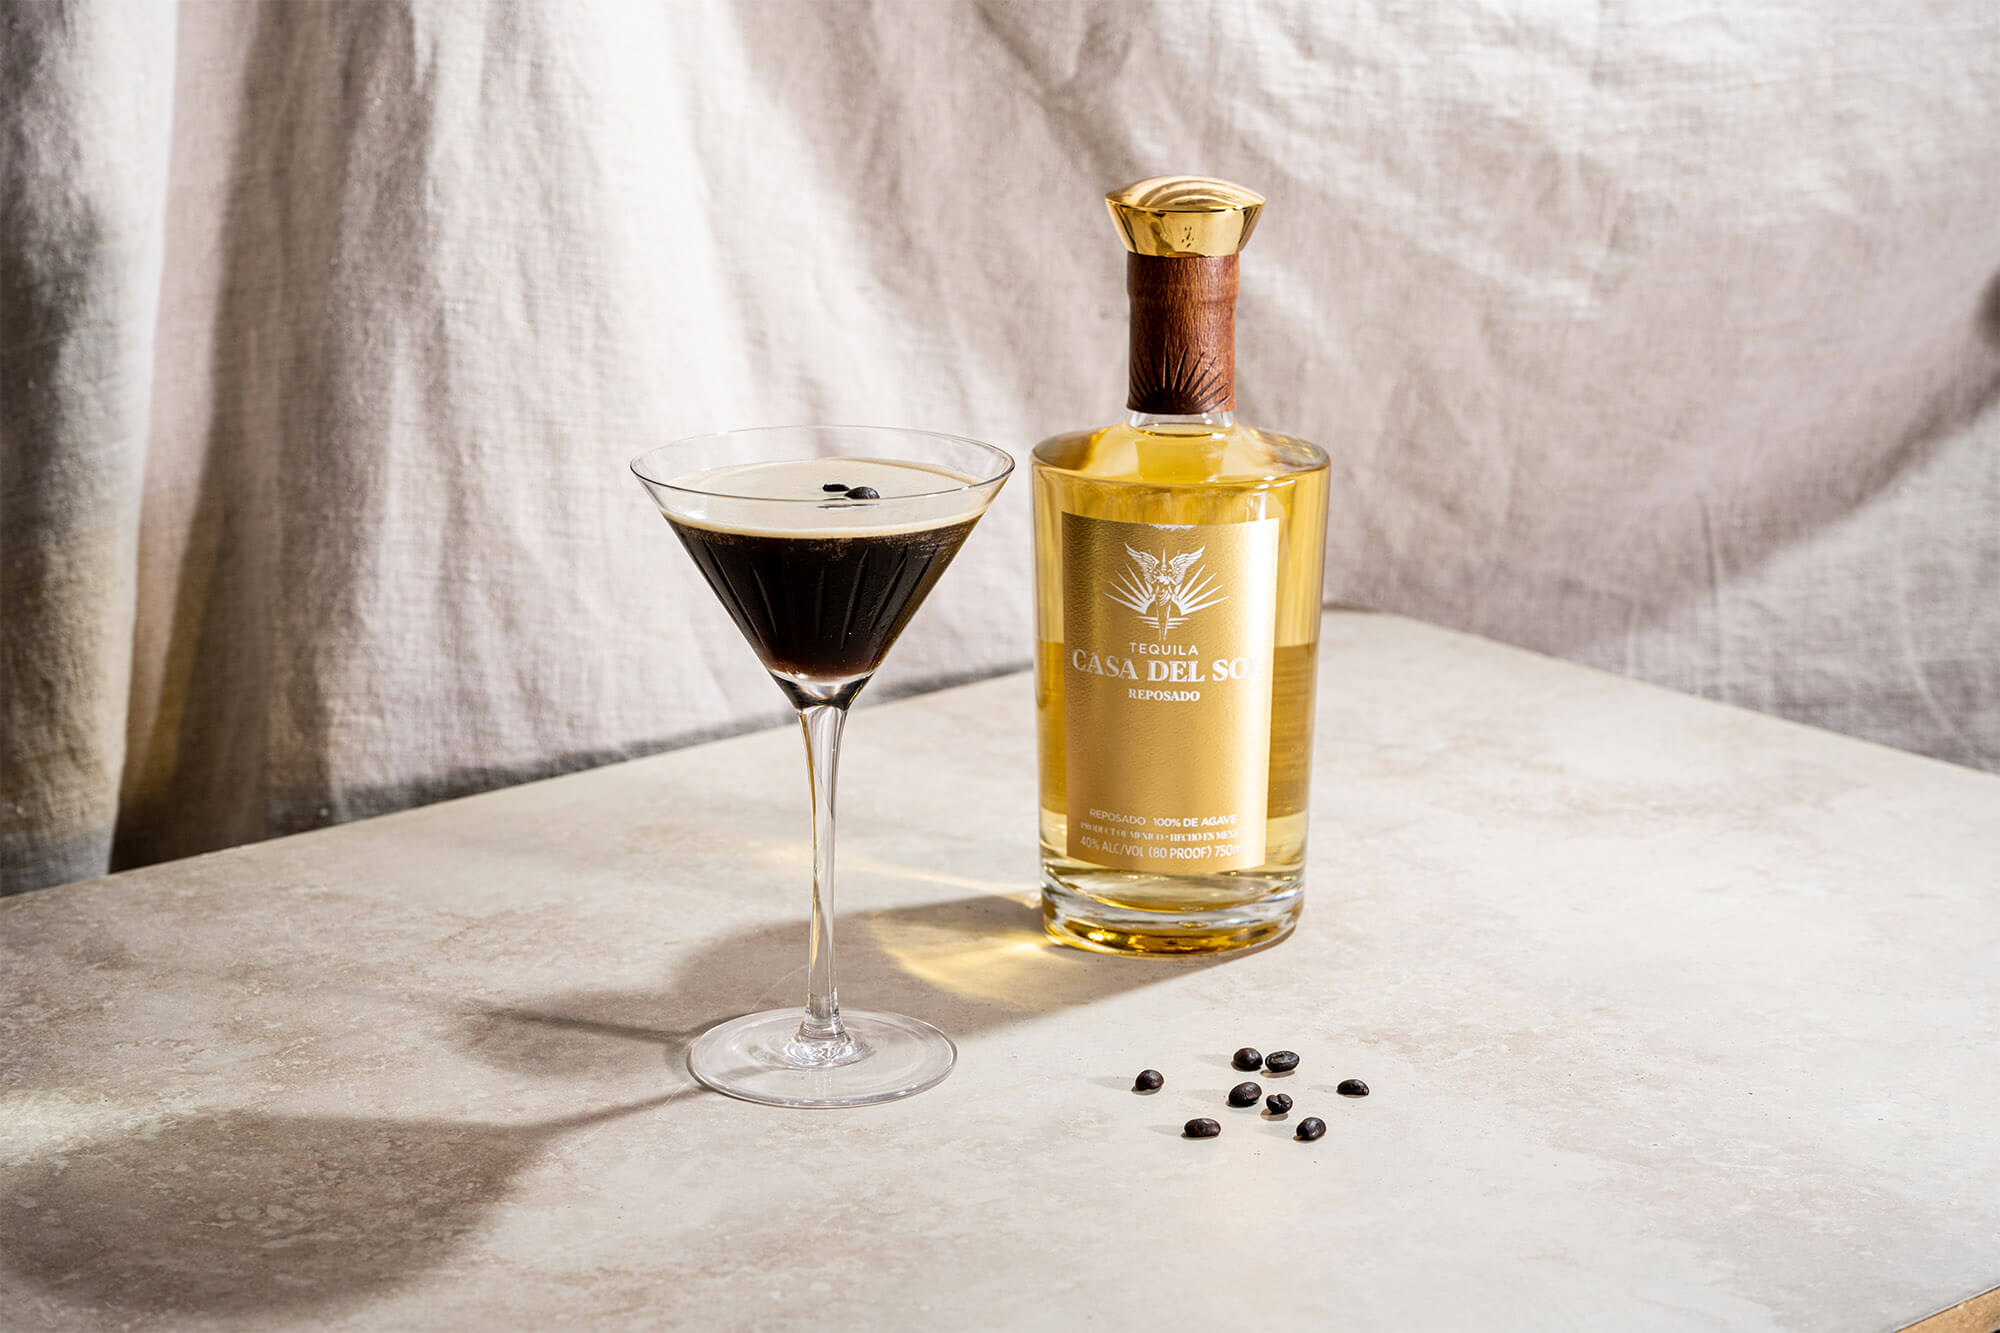 EspresSOL Martini, featured image